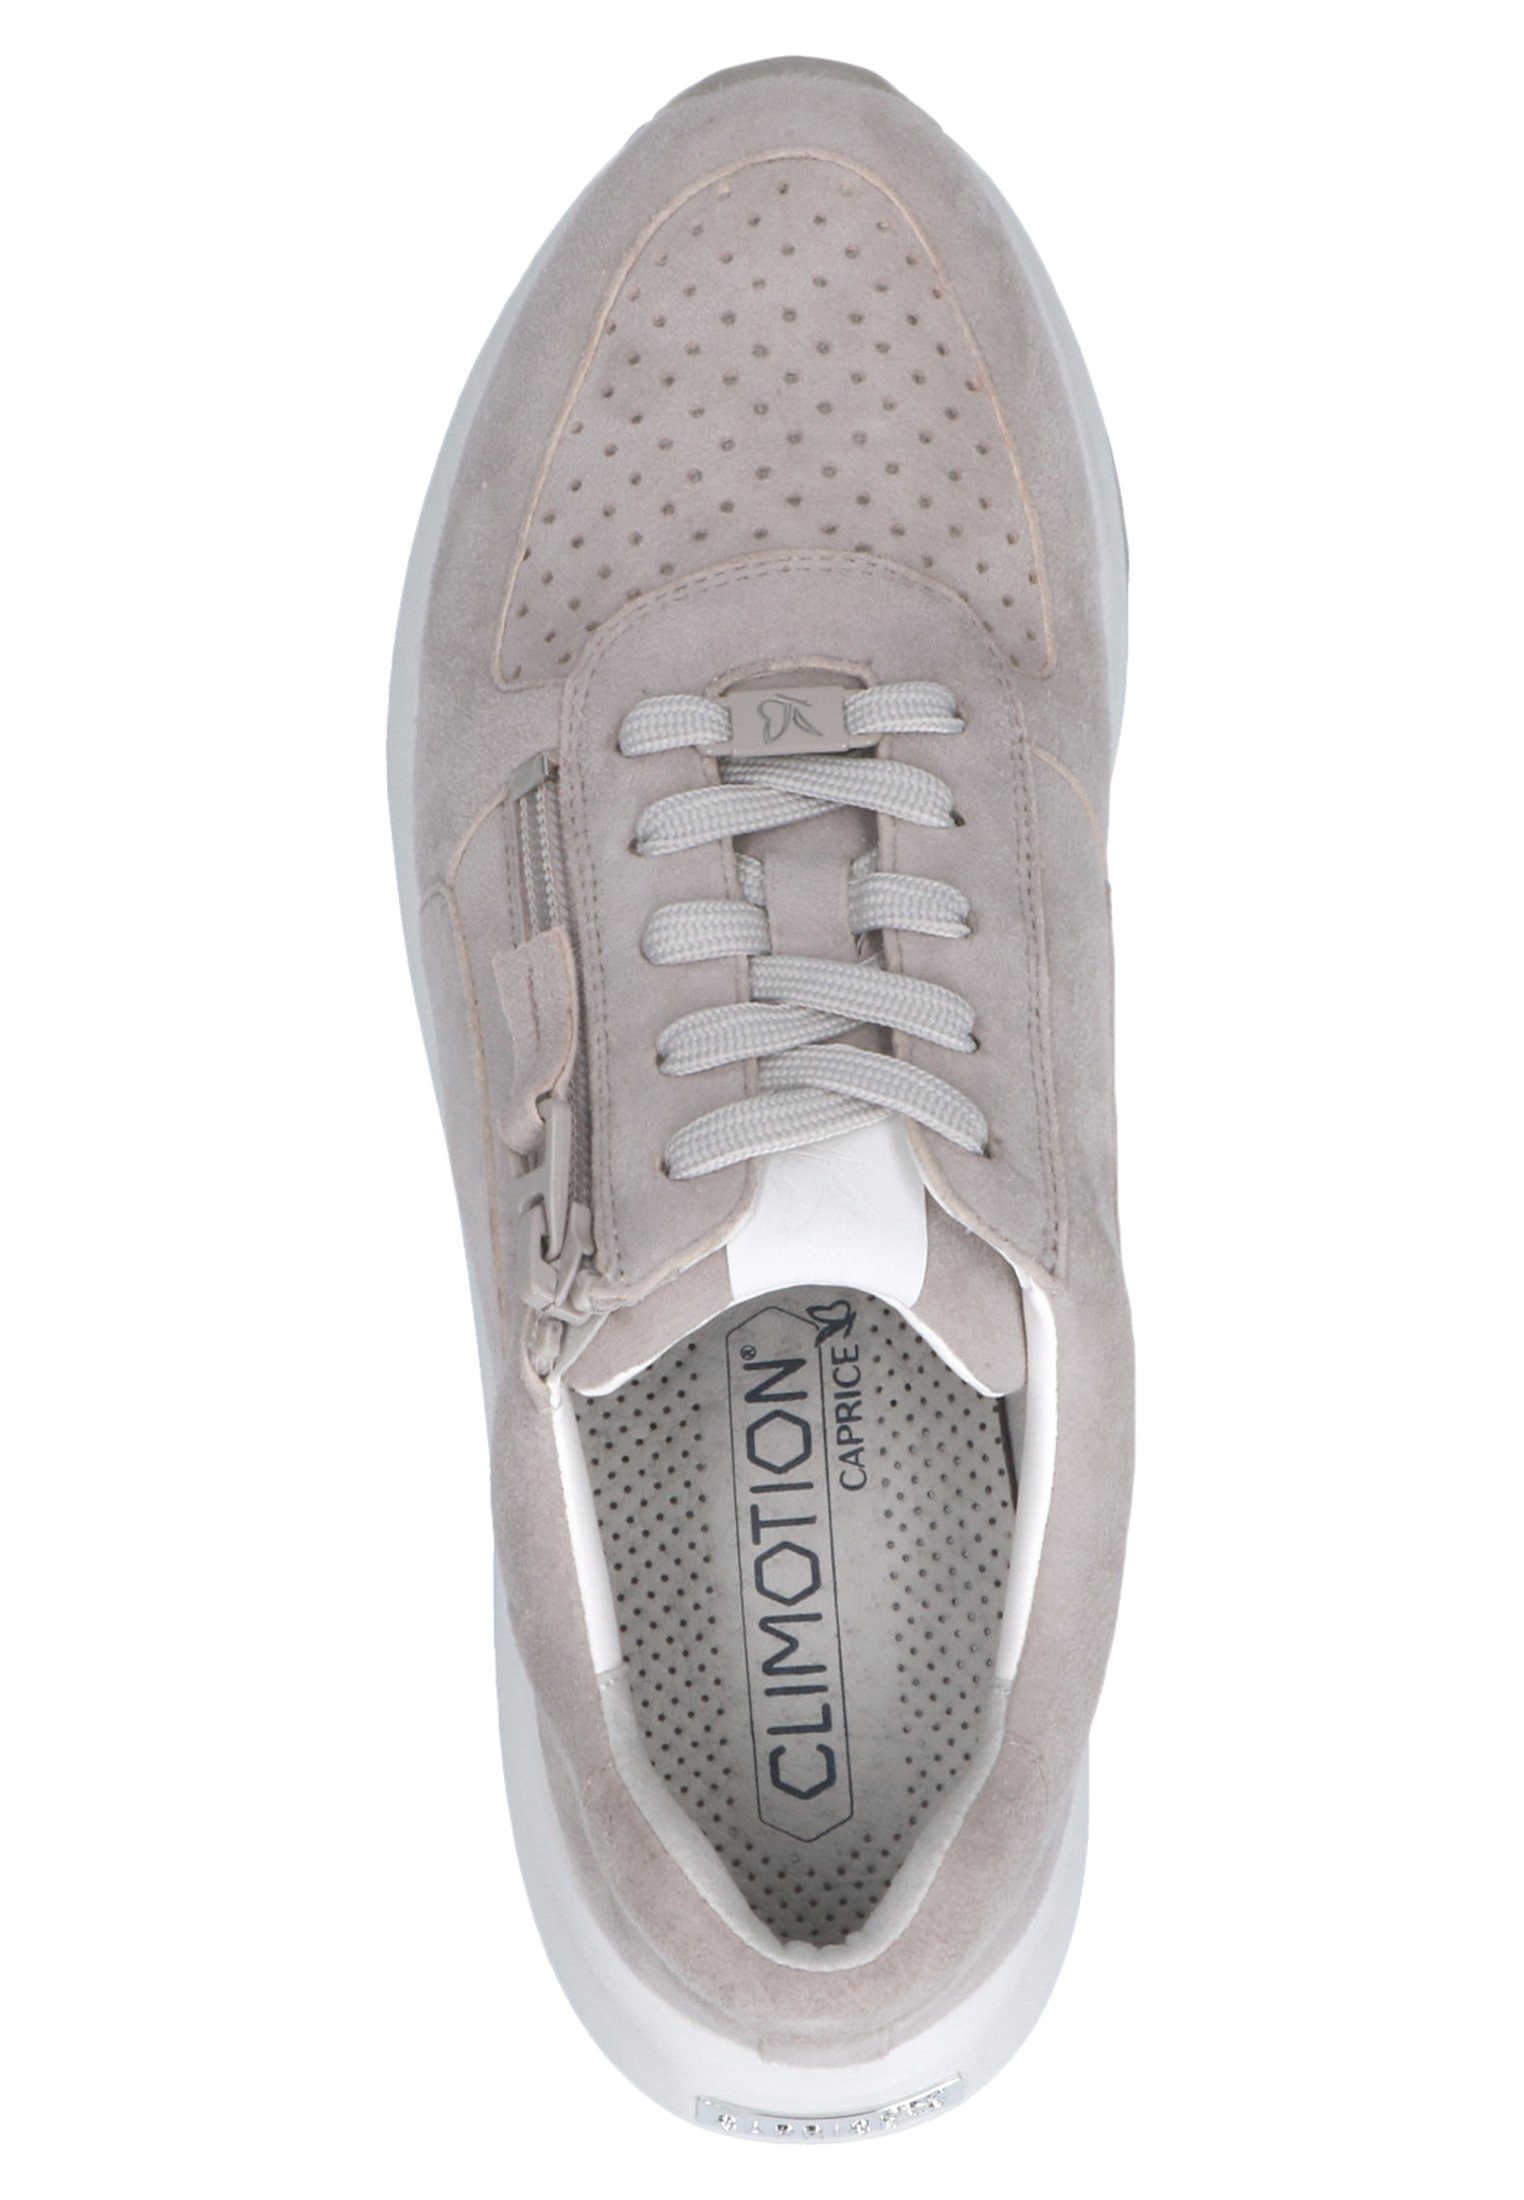 238 Suede 9-23714-28 Caprice Grey Sneaker